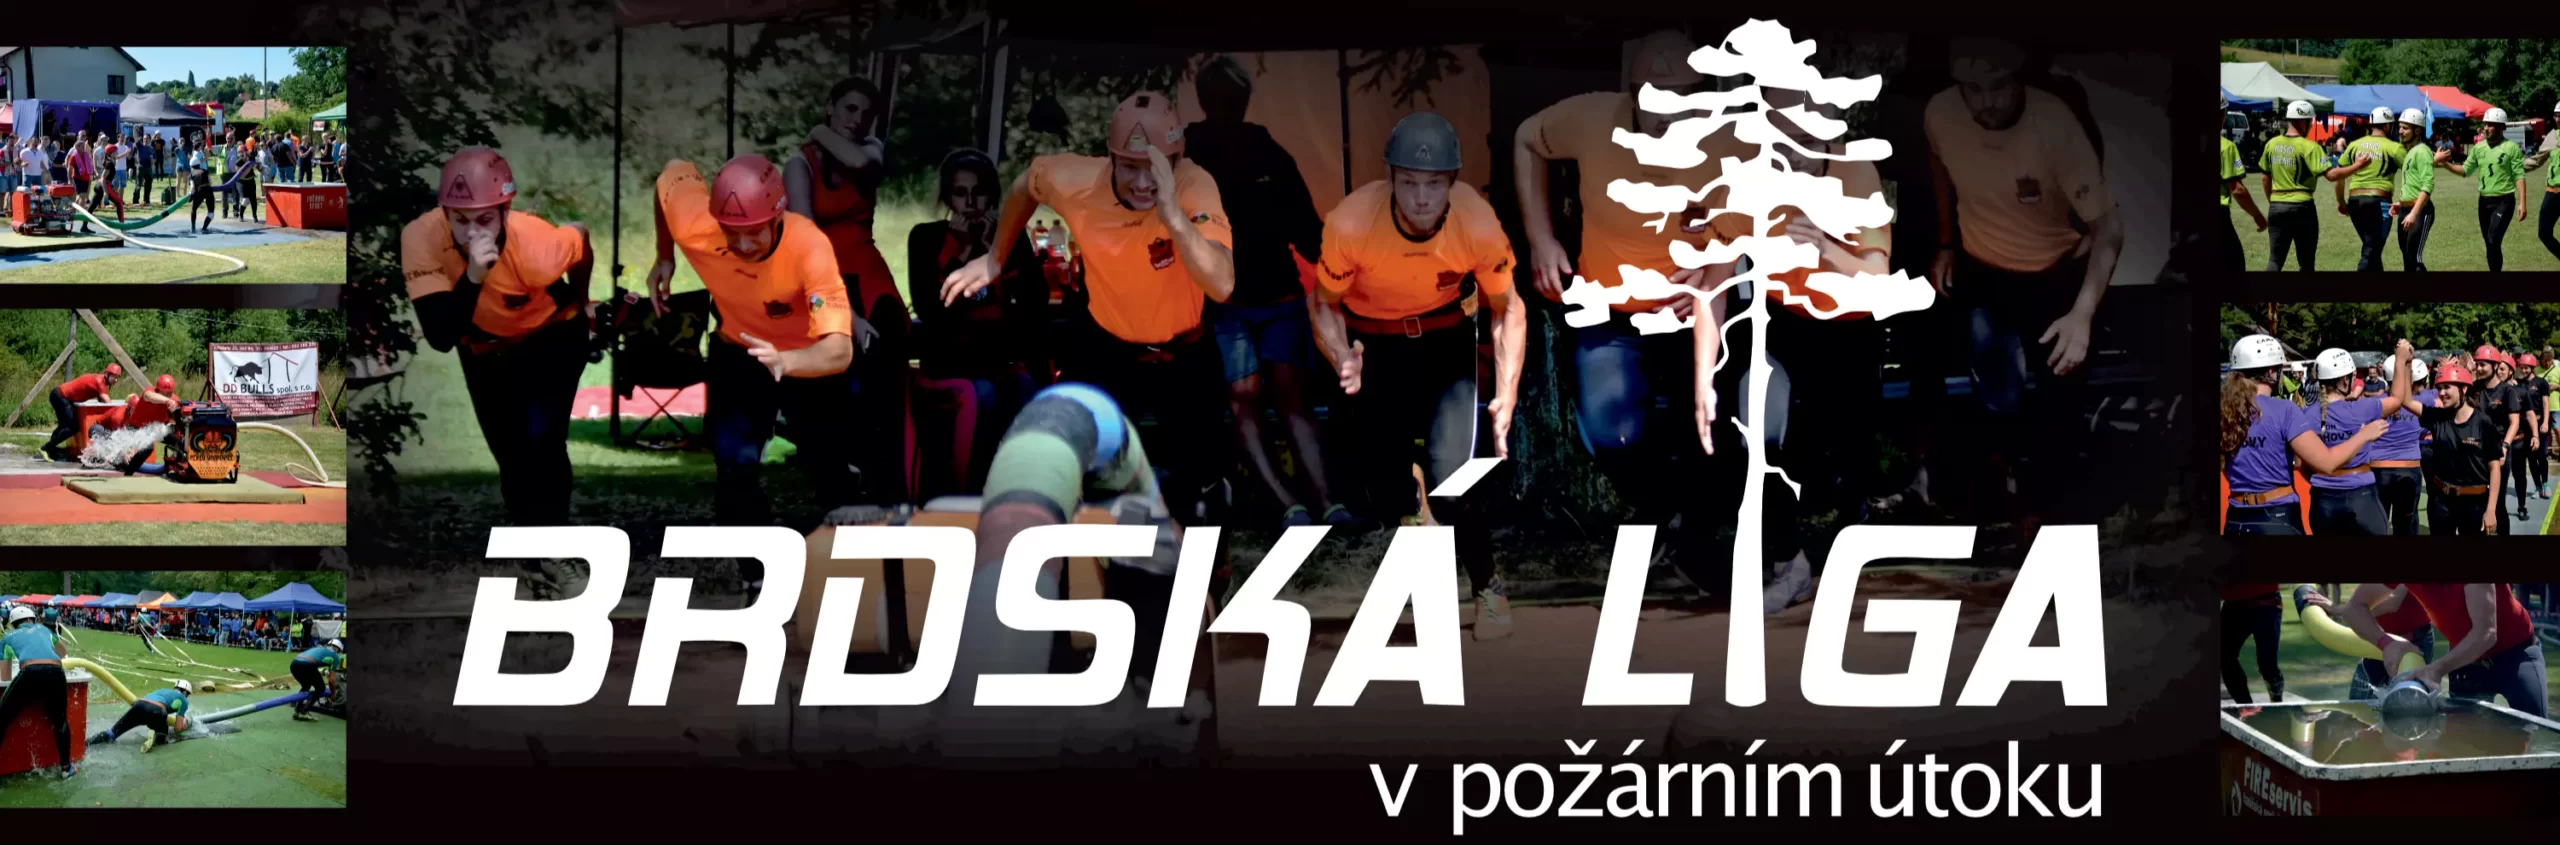 Bdská liga banner